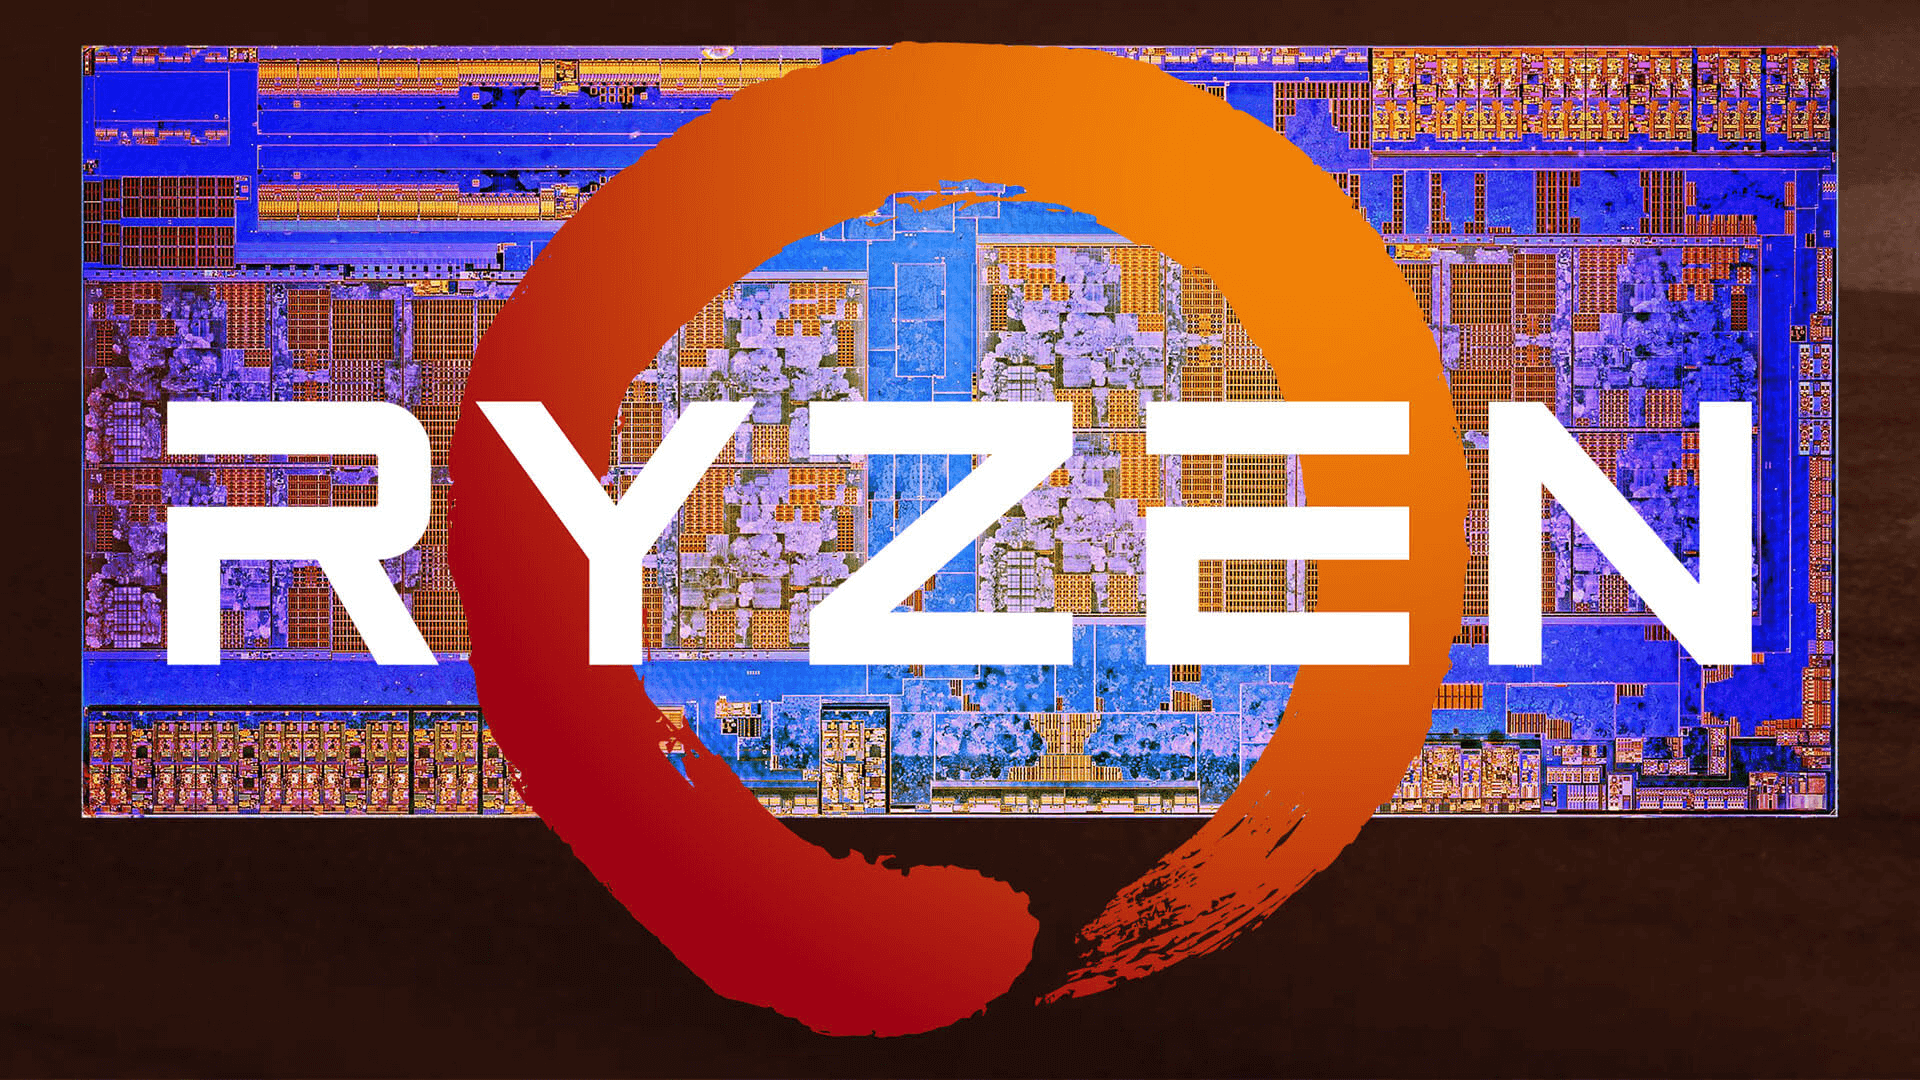 La 3ra generación de procesadores AMD Ryzen llegará en la Computex 2019